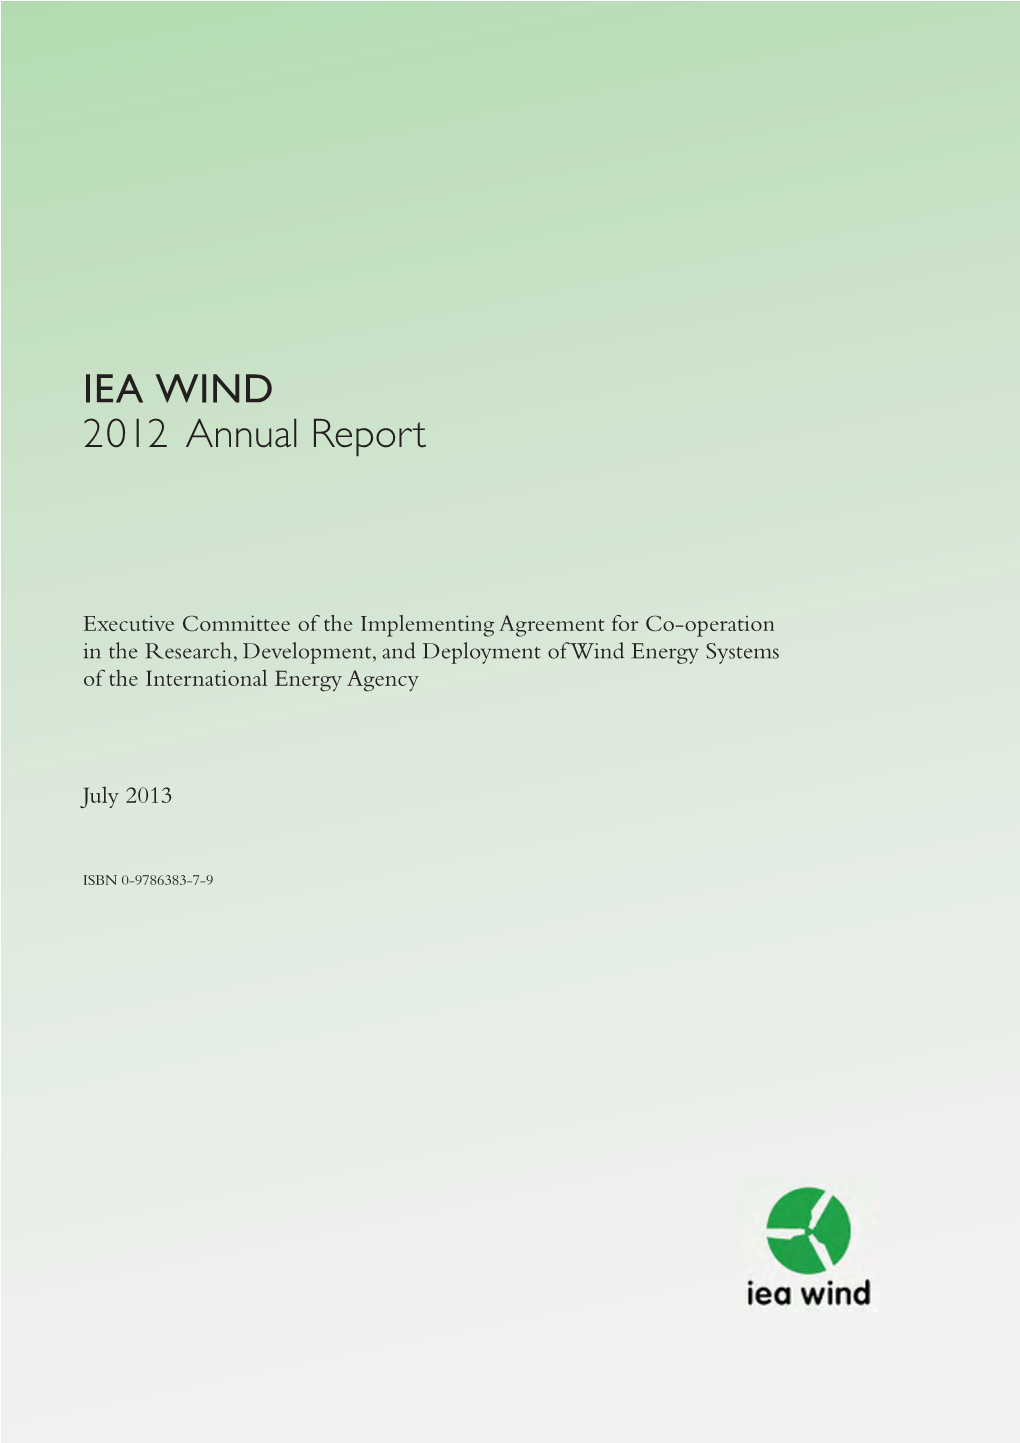 IEA WIND 2012 Annual Report